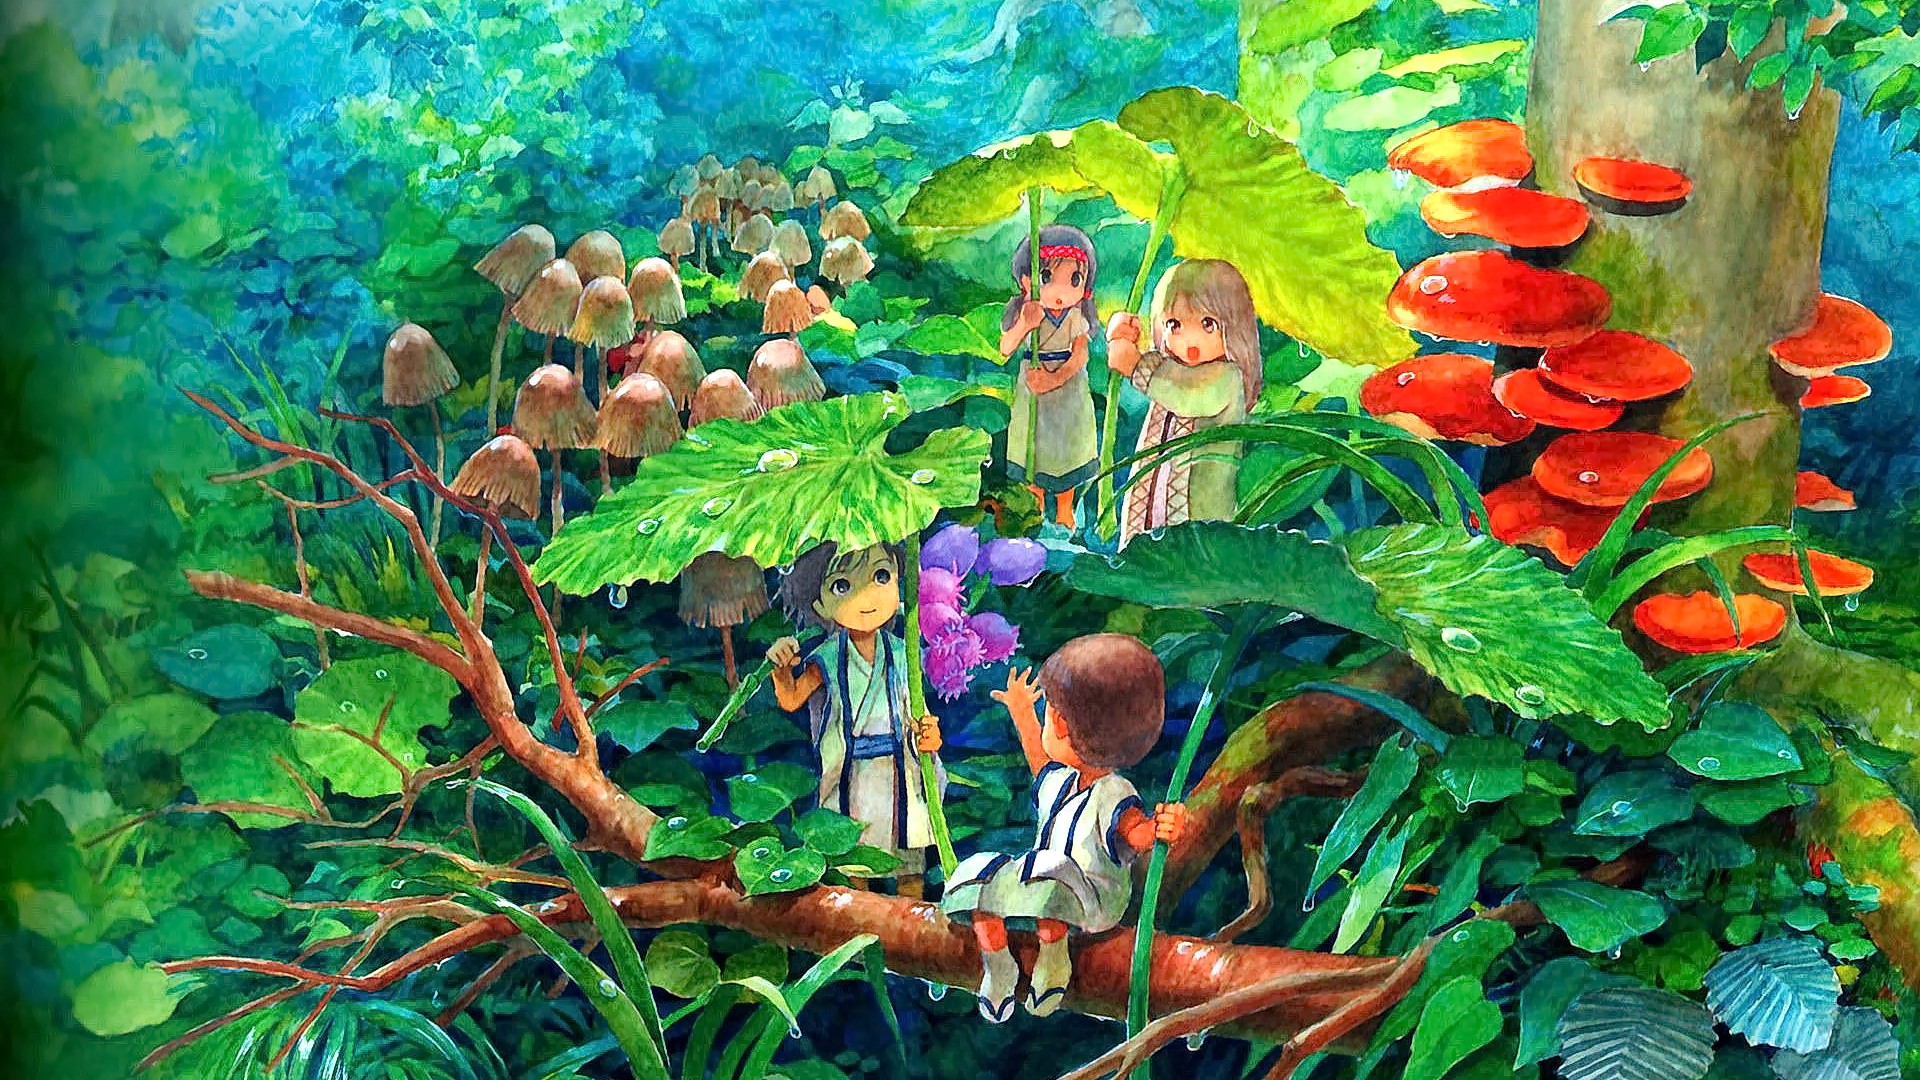 Anime 1920x1080 anime anime girls brunette blonde trees plants fantasy art mushroom leaves forest